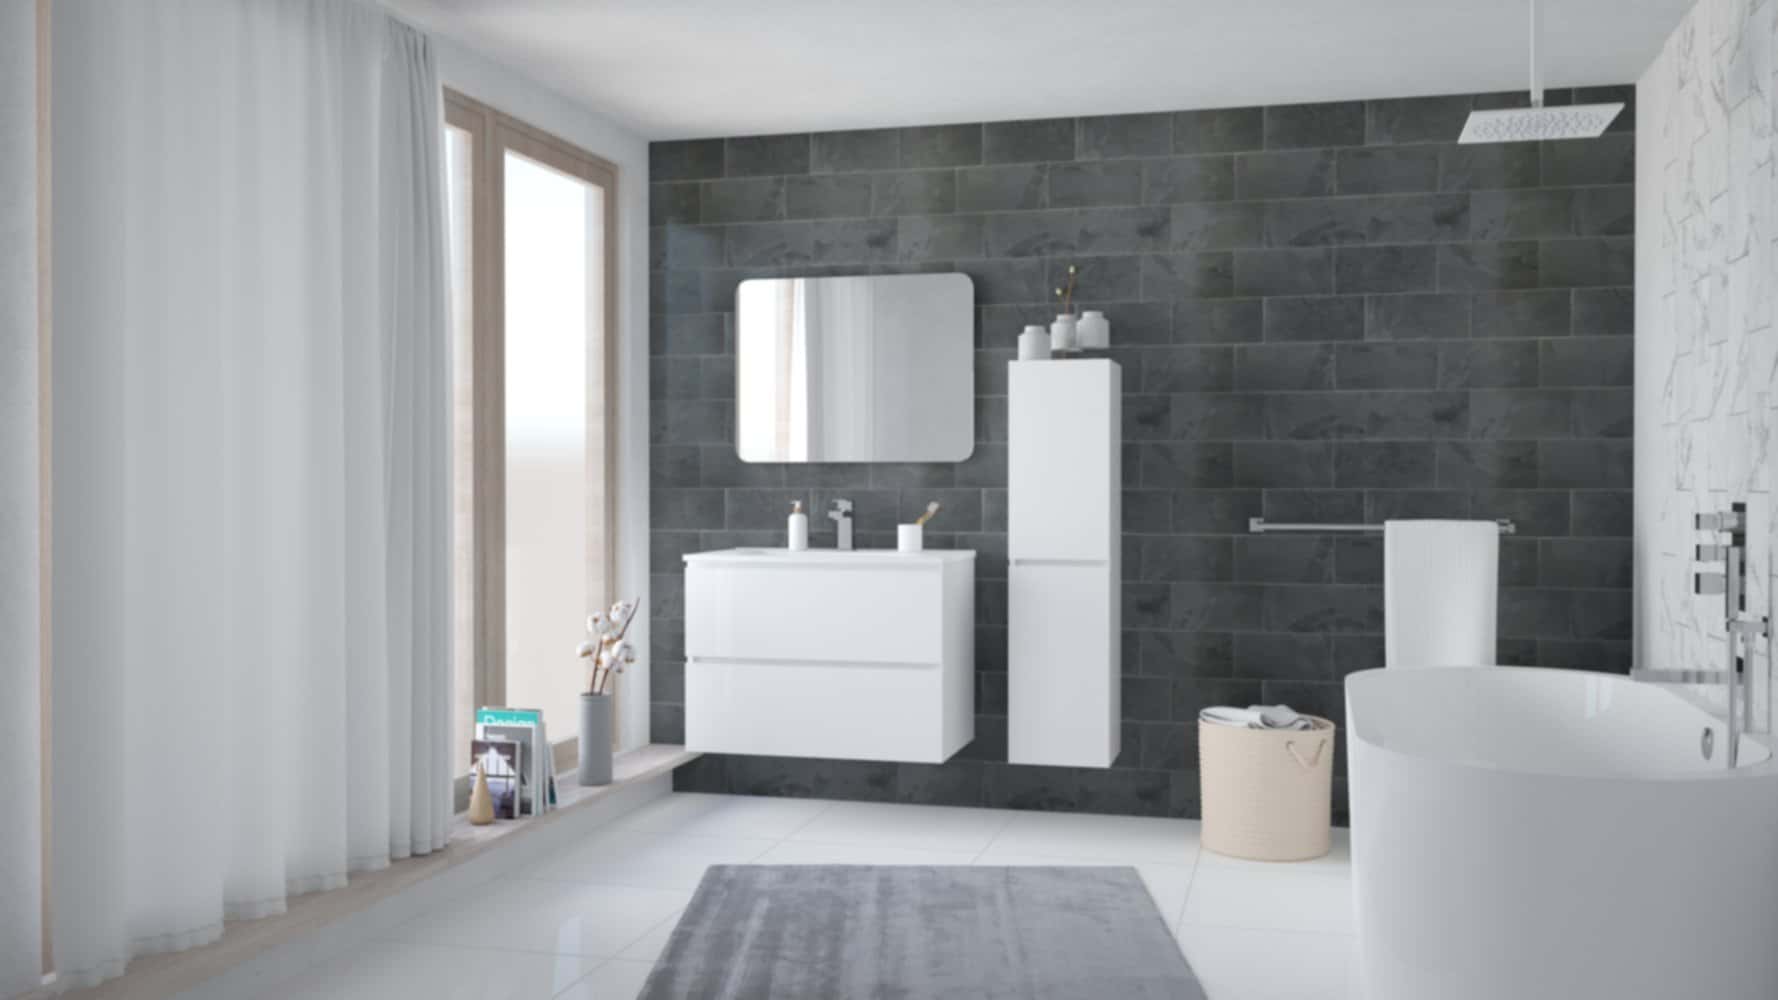 Mr. Bricolage Guadeloupe - Aménagez votre salle de bain à PRIX DOUX avec  l'𝗢𝗽é𝗿𝗮𝘁𝗶𝗼𝗻 𝗦𝗼𝗹 & 𝗕𝗮𝗶𝗻 ! Le meuble Agate gris 60 cm est à  219€ chez Mr Bricolage Guadeloupe. 🛀🏾